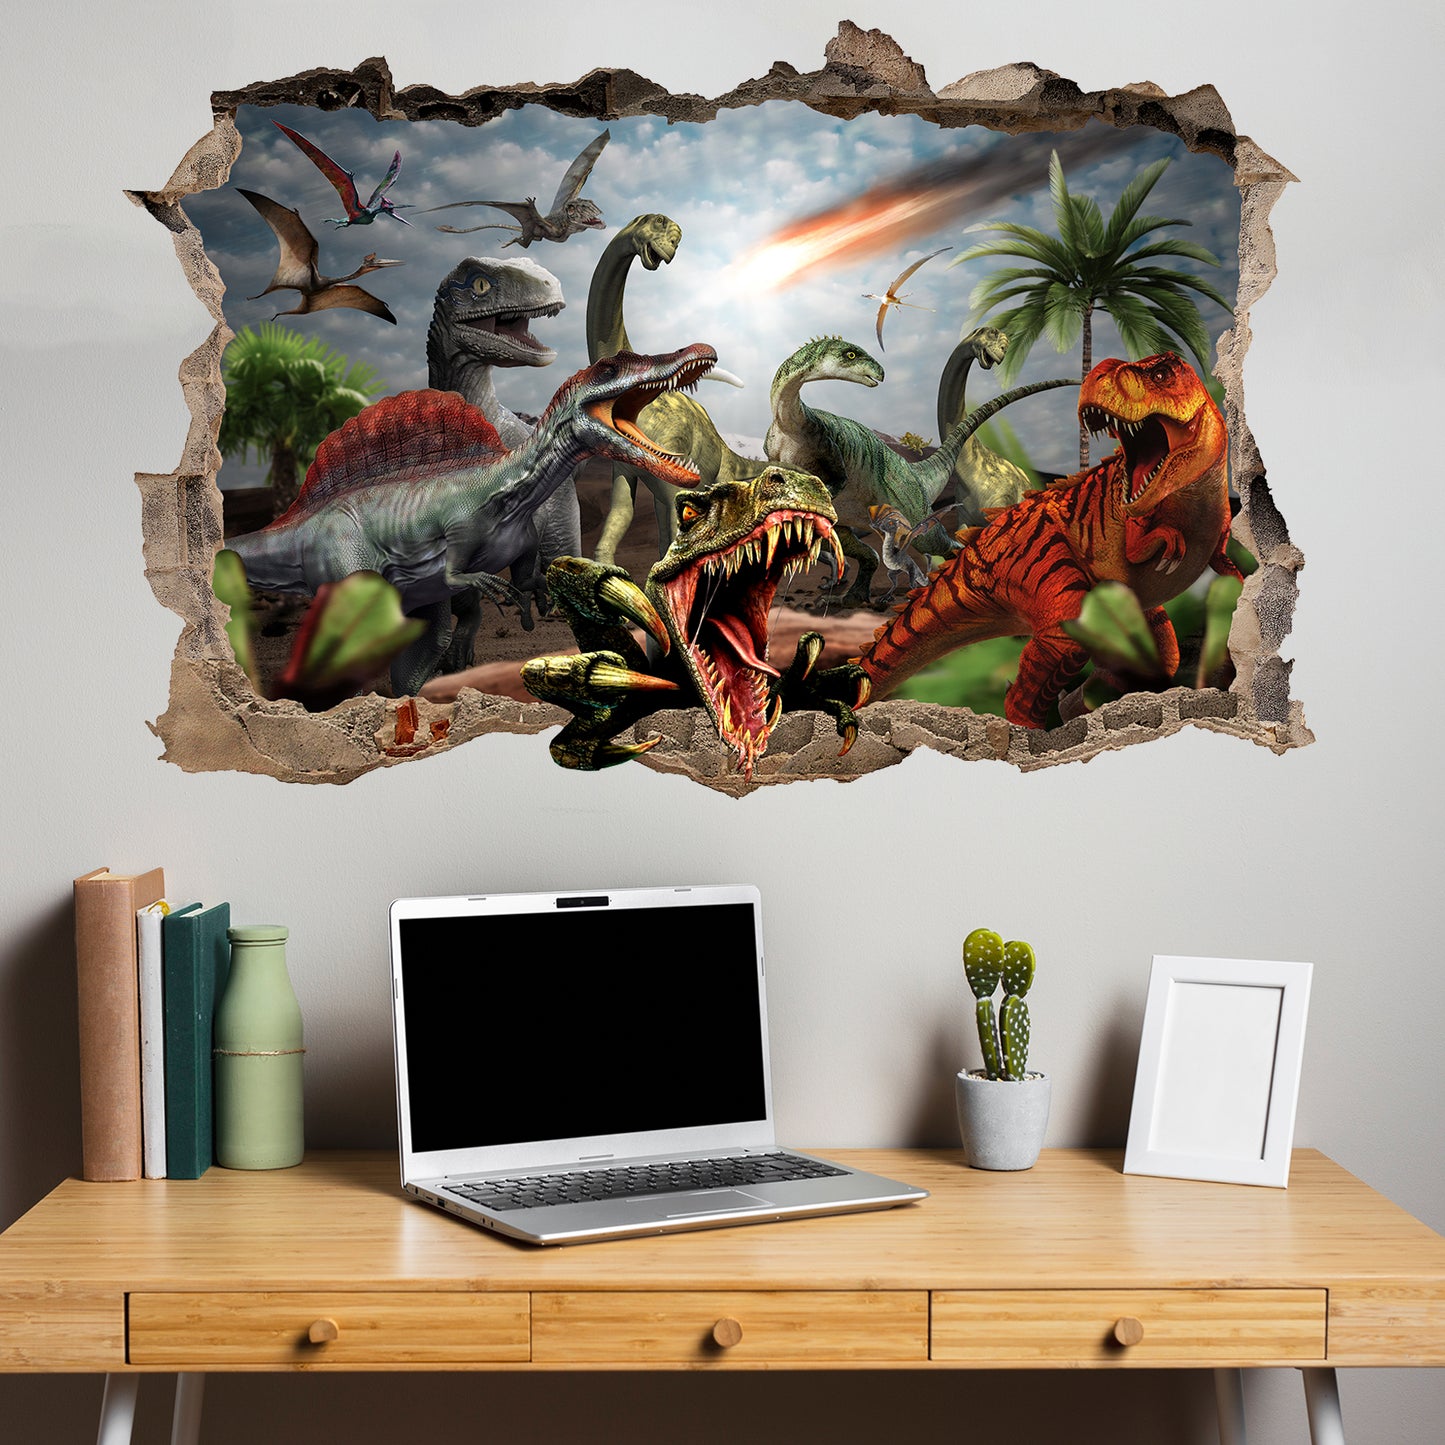 Jurassic World Dinosaurs Wall Sticker Mural Decal Poster